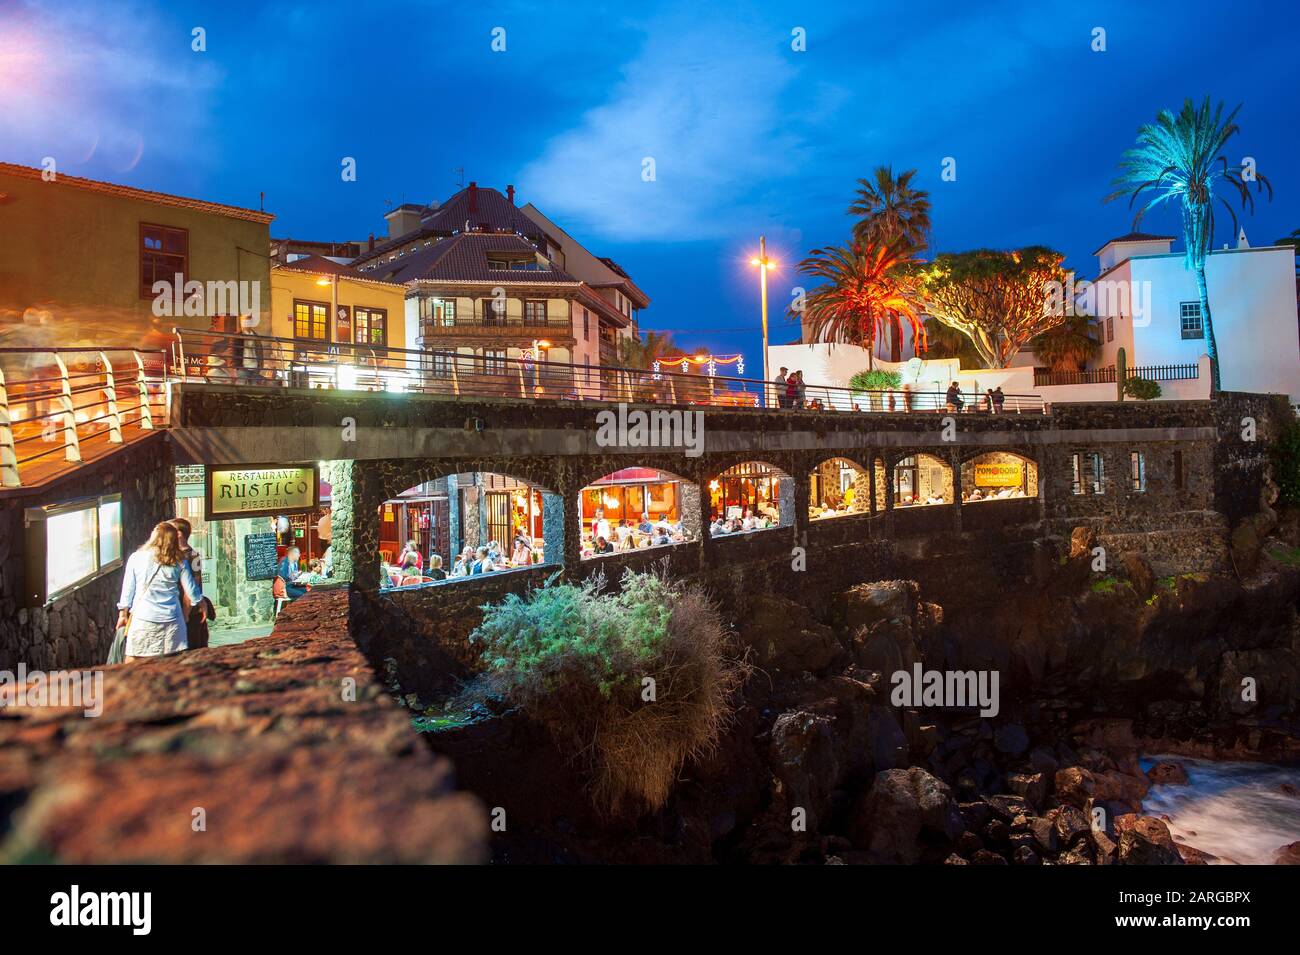 Île des Canaries TENERIFE, ESPAGNE - 25 DEC, 2019: Restaurant construit dans les rochers dans la ville de Puerto de la Cruz sur l'île des Canaries Tenerife. Banque D'Images